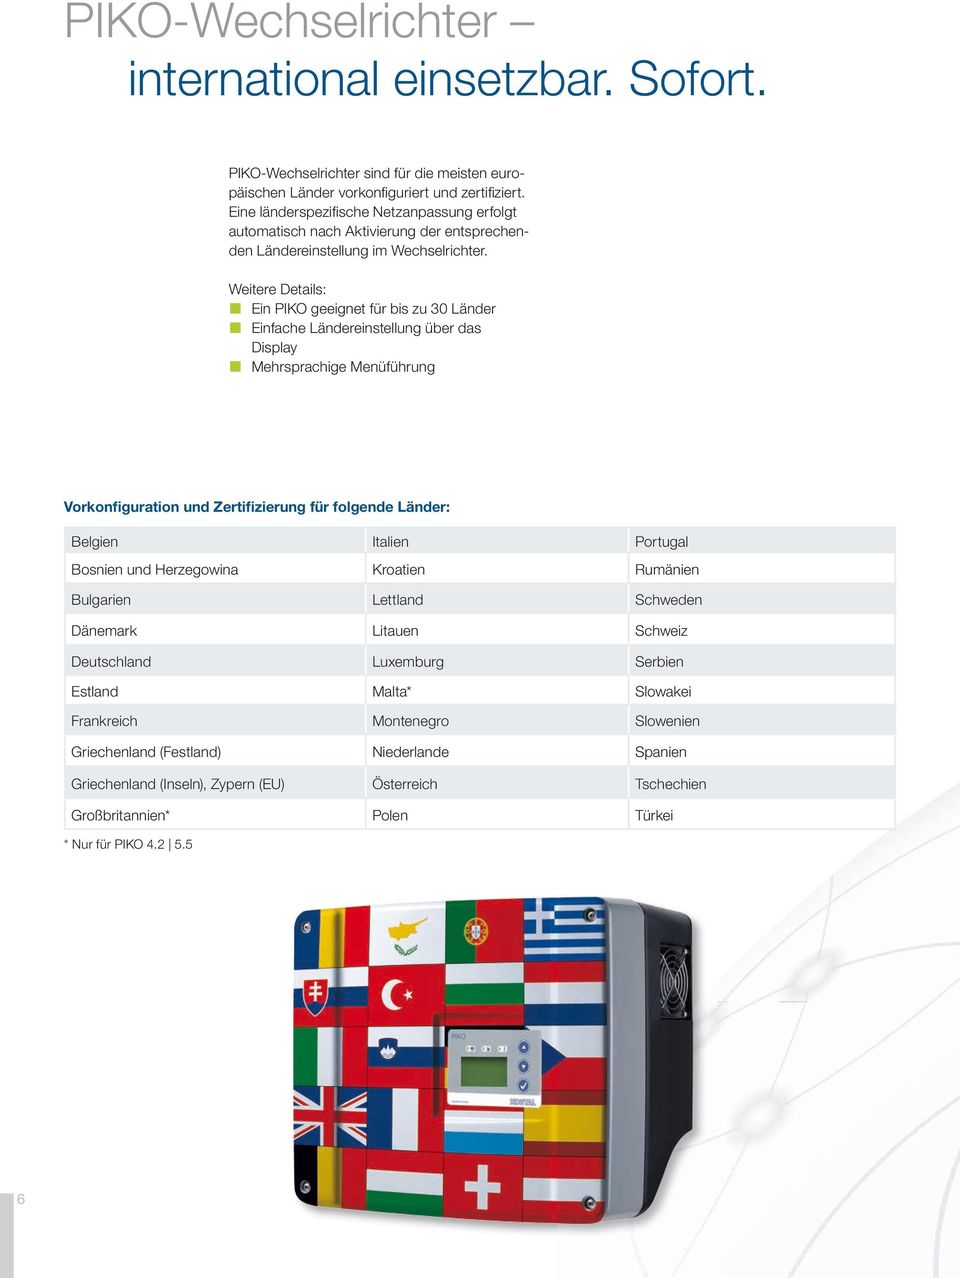 Weitere Details: Ein PIKO geeignet für bis zu 30 Länder Einfache Ländereinstellung über das Display Mehrsprachige Menüführung Vorkonfiguration und Zertifizierung für folgende Länder: Belgien Italien